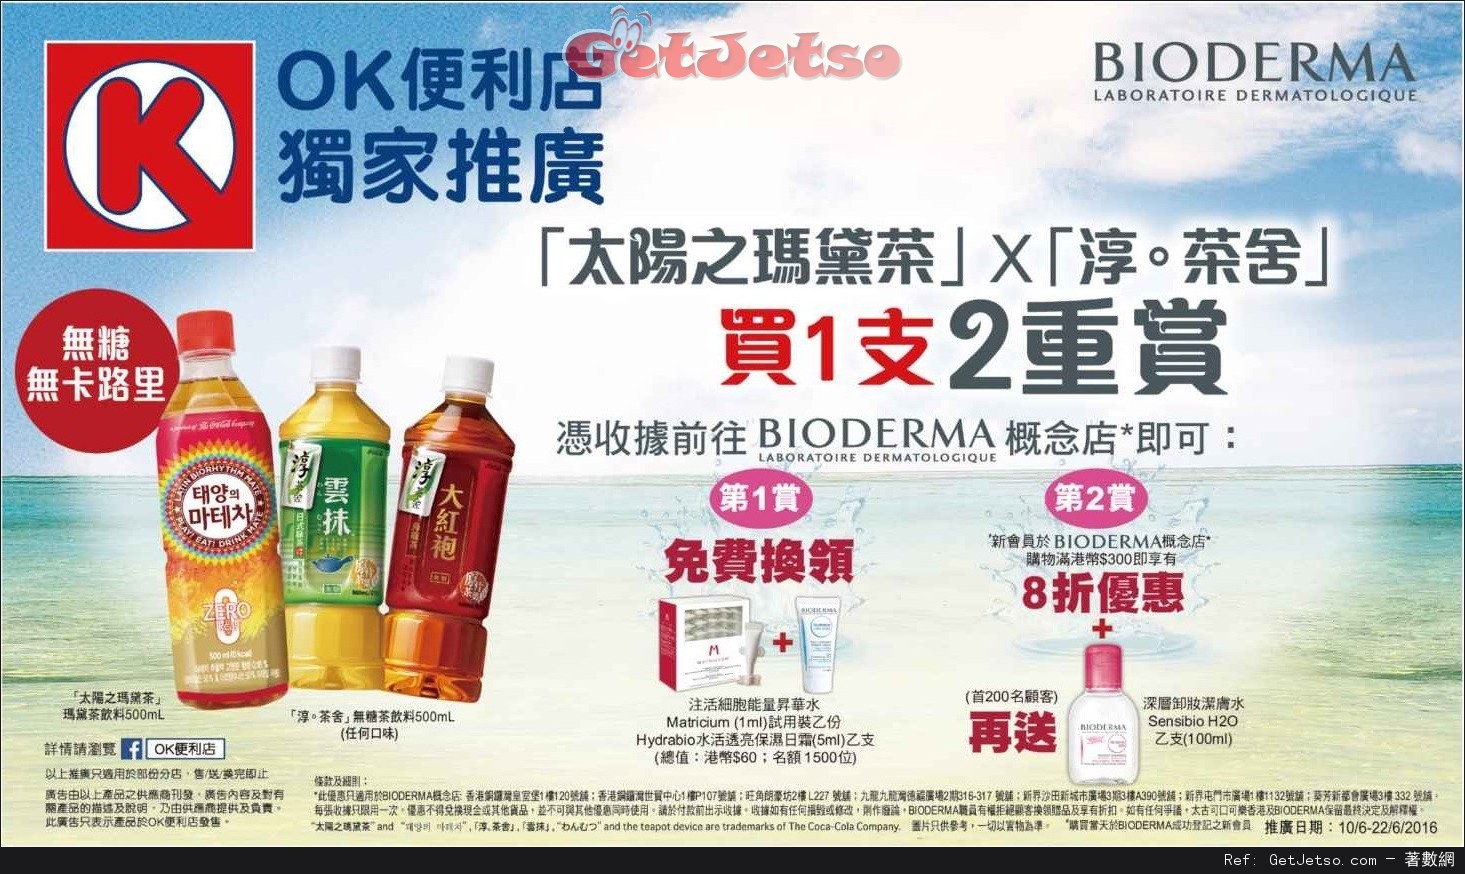 BIODERMA X OK便利店推廣優惠(至16年6月22日)圖片1